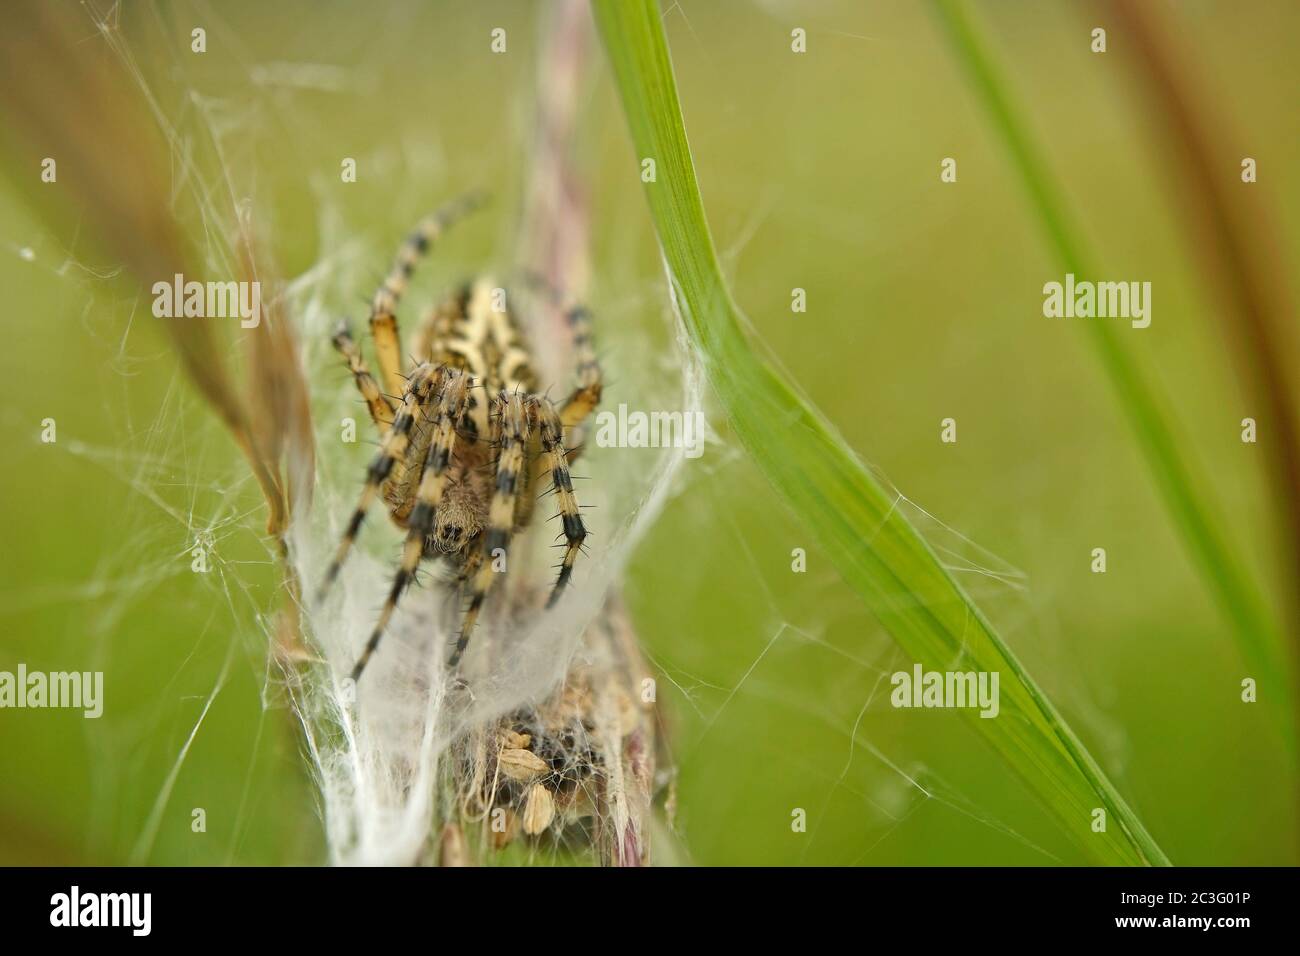 Oak spider in its cobweb Stock Photo